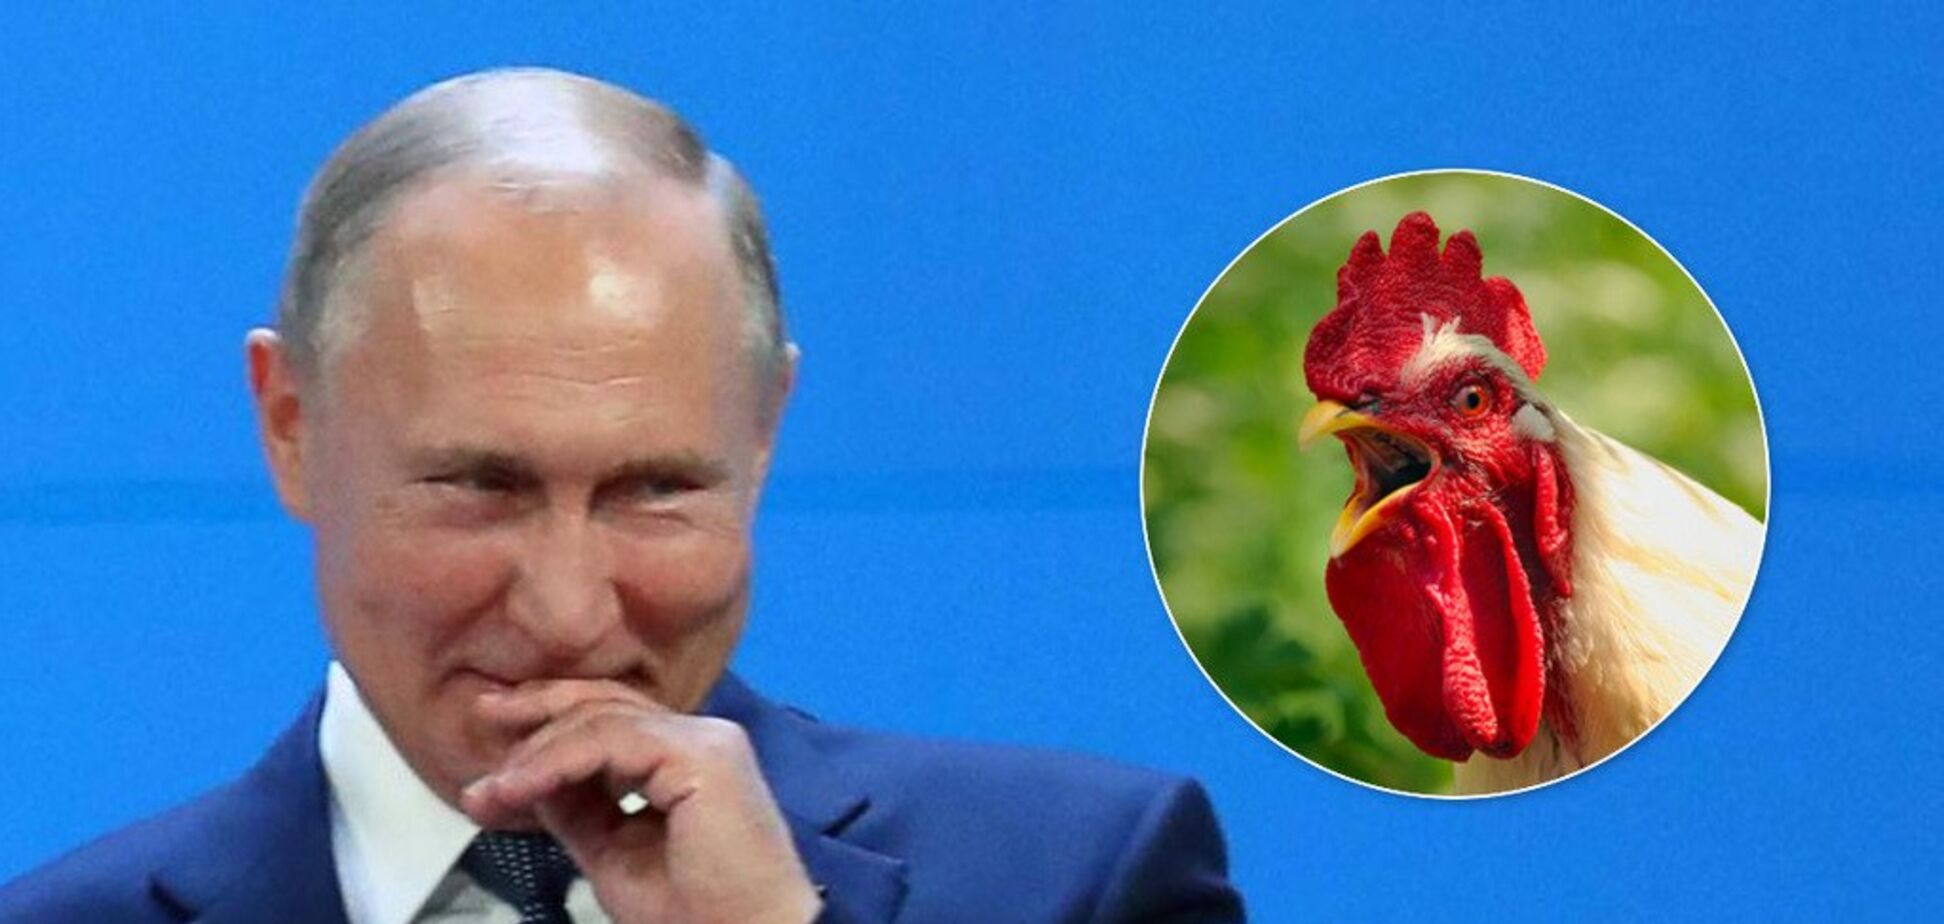 Путін осоромився розповіддю про 'півника': що трапилося. Відео